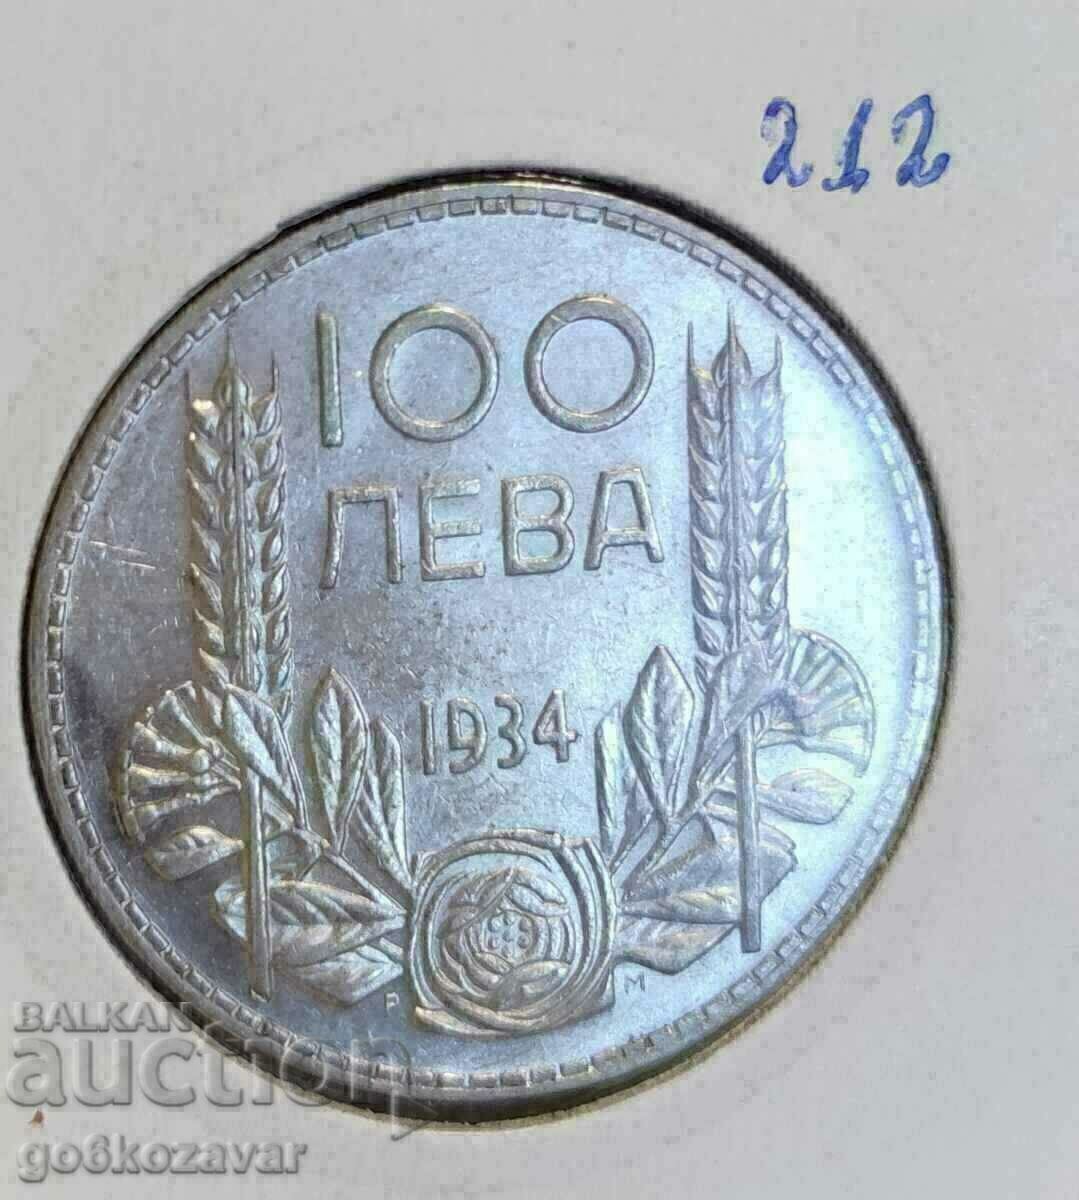 Bulgaria BGN 100 1934 Silver! Collection!